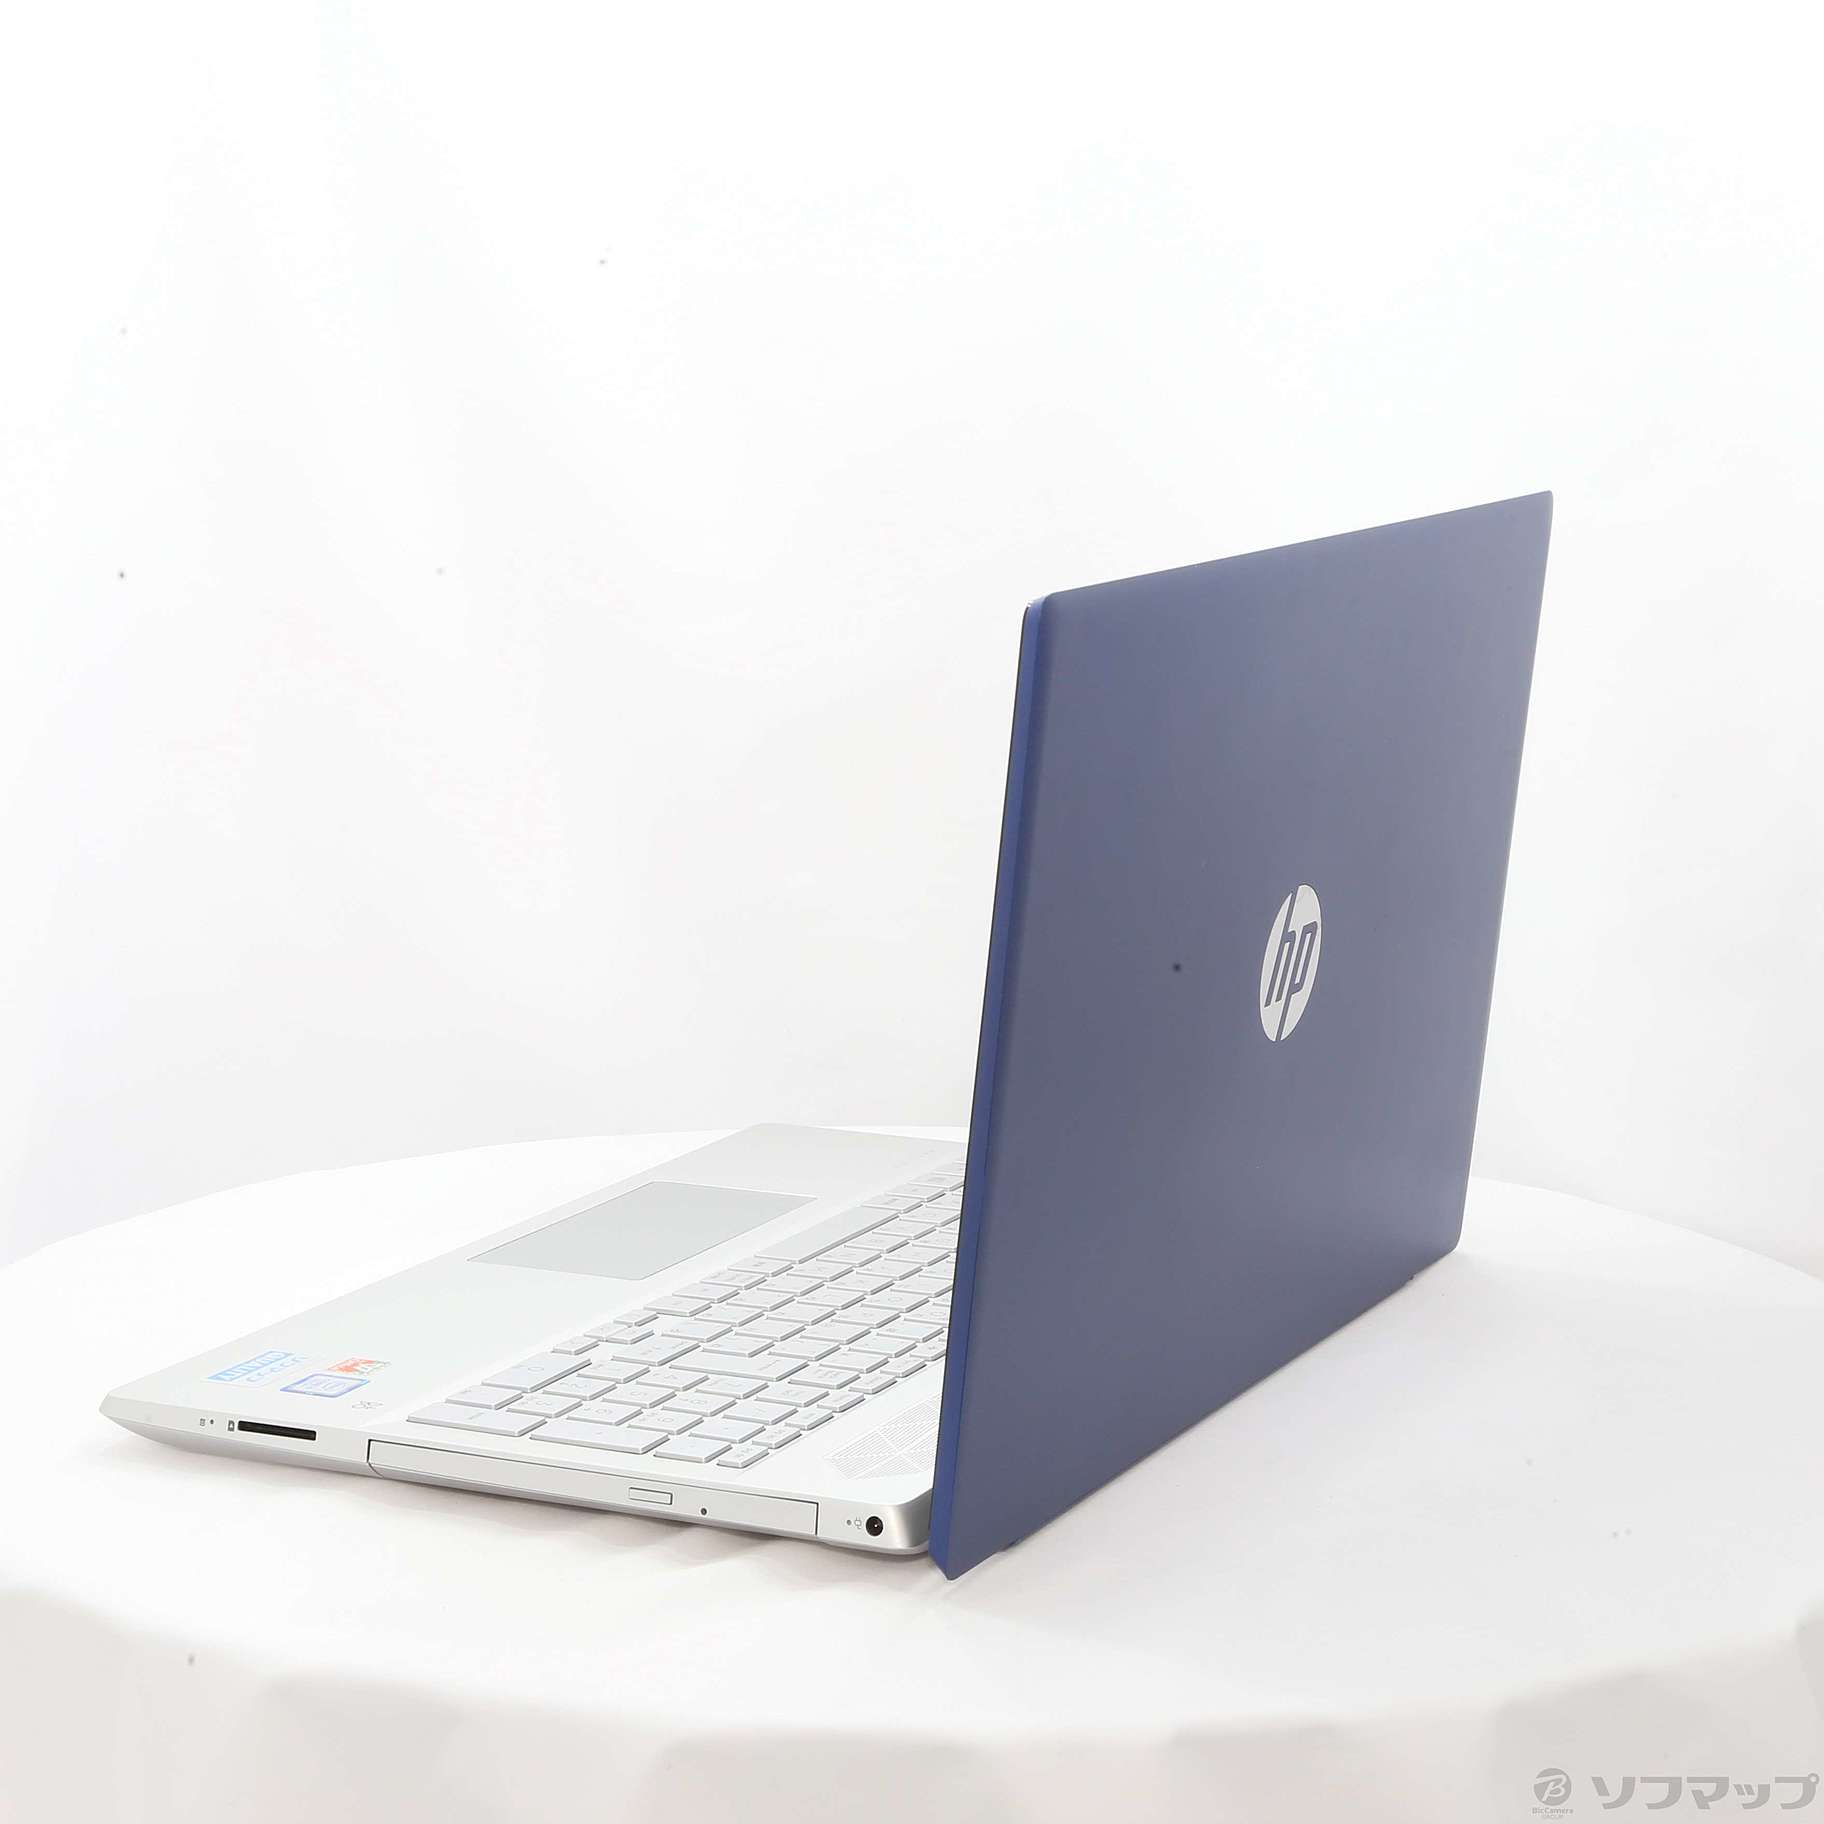 HP Pavilion Laptop 15-cu0004TU  ロイヤルブルー